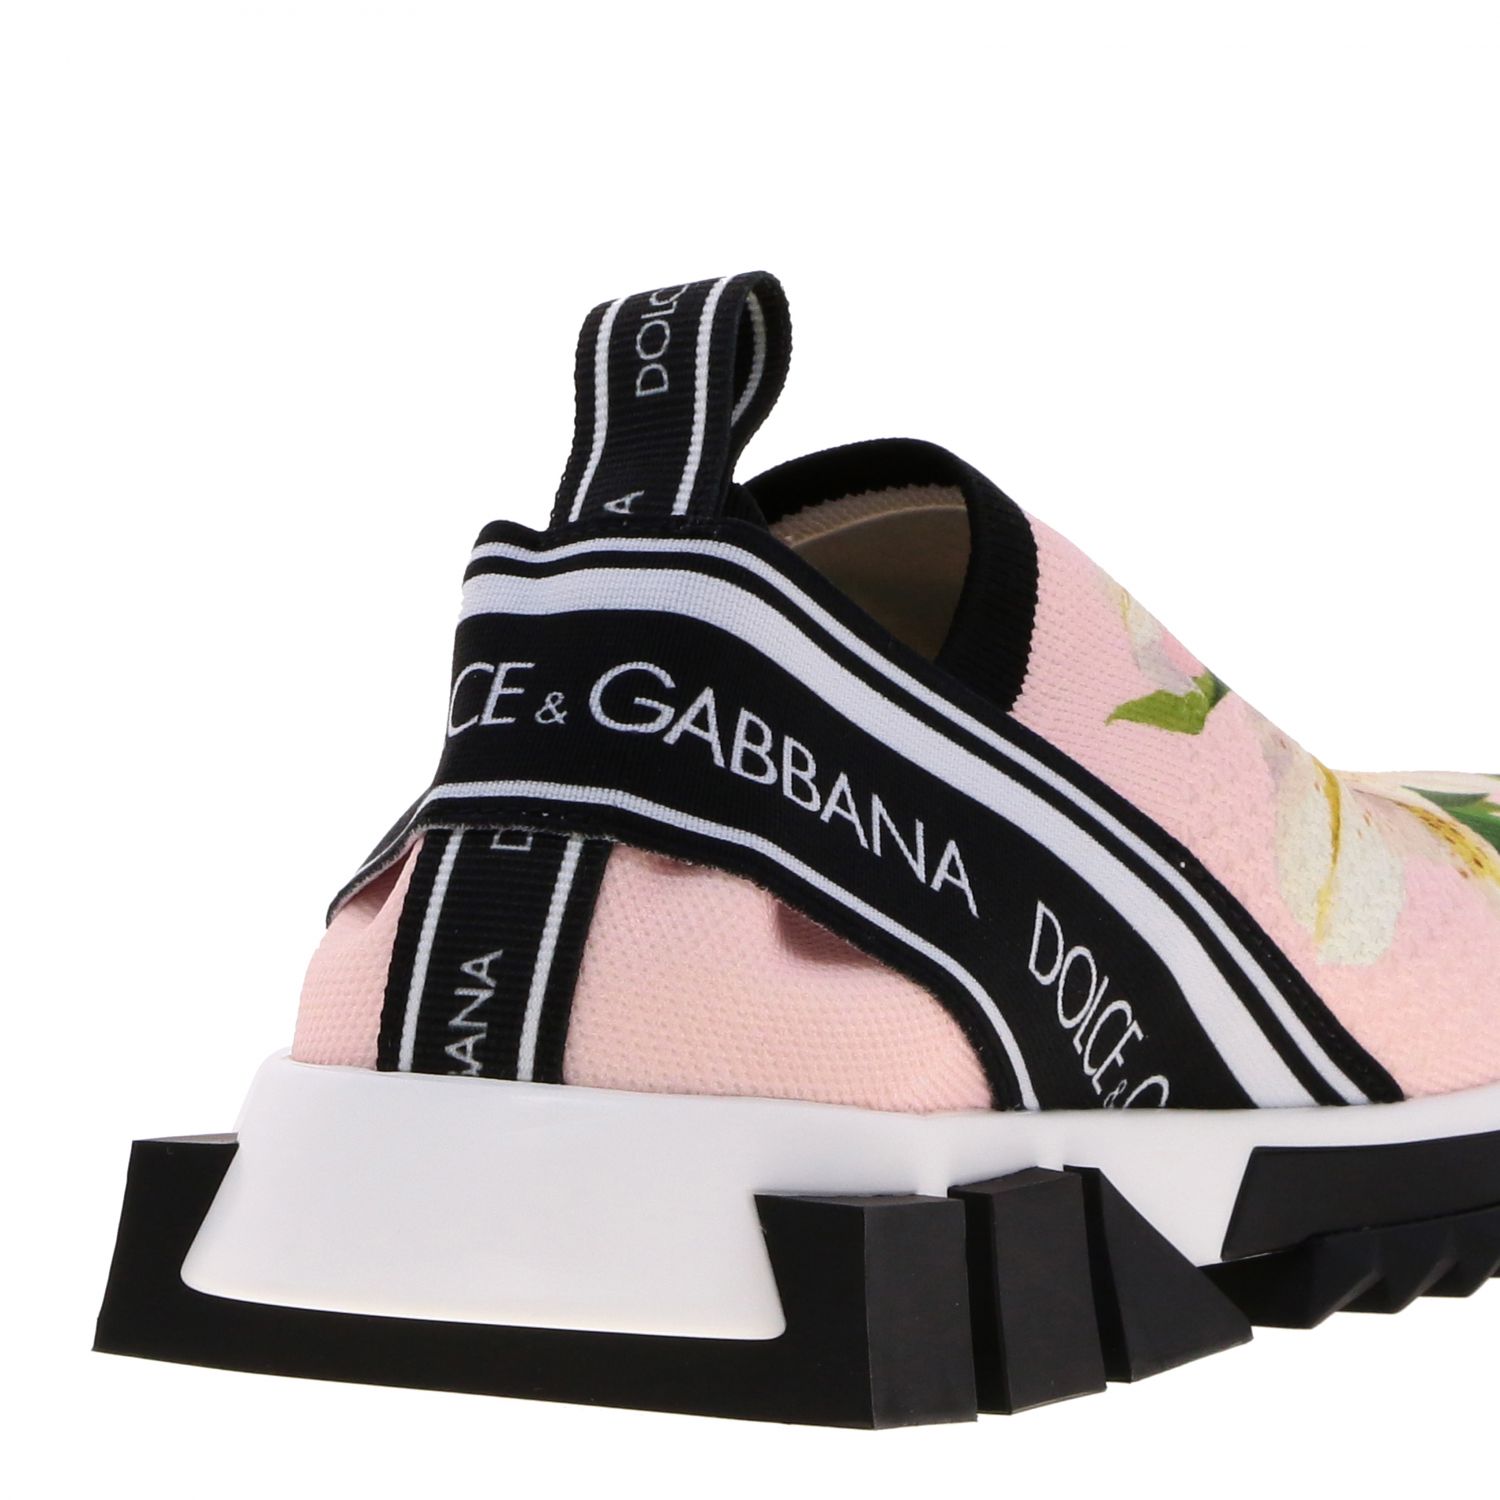 Dolce & Gabbana Outlet: Sneakers women | Sneakers Dolce & Gabbana Women ...